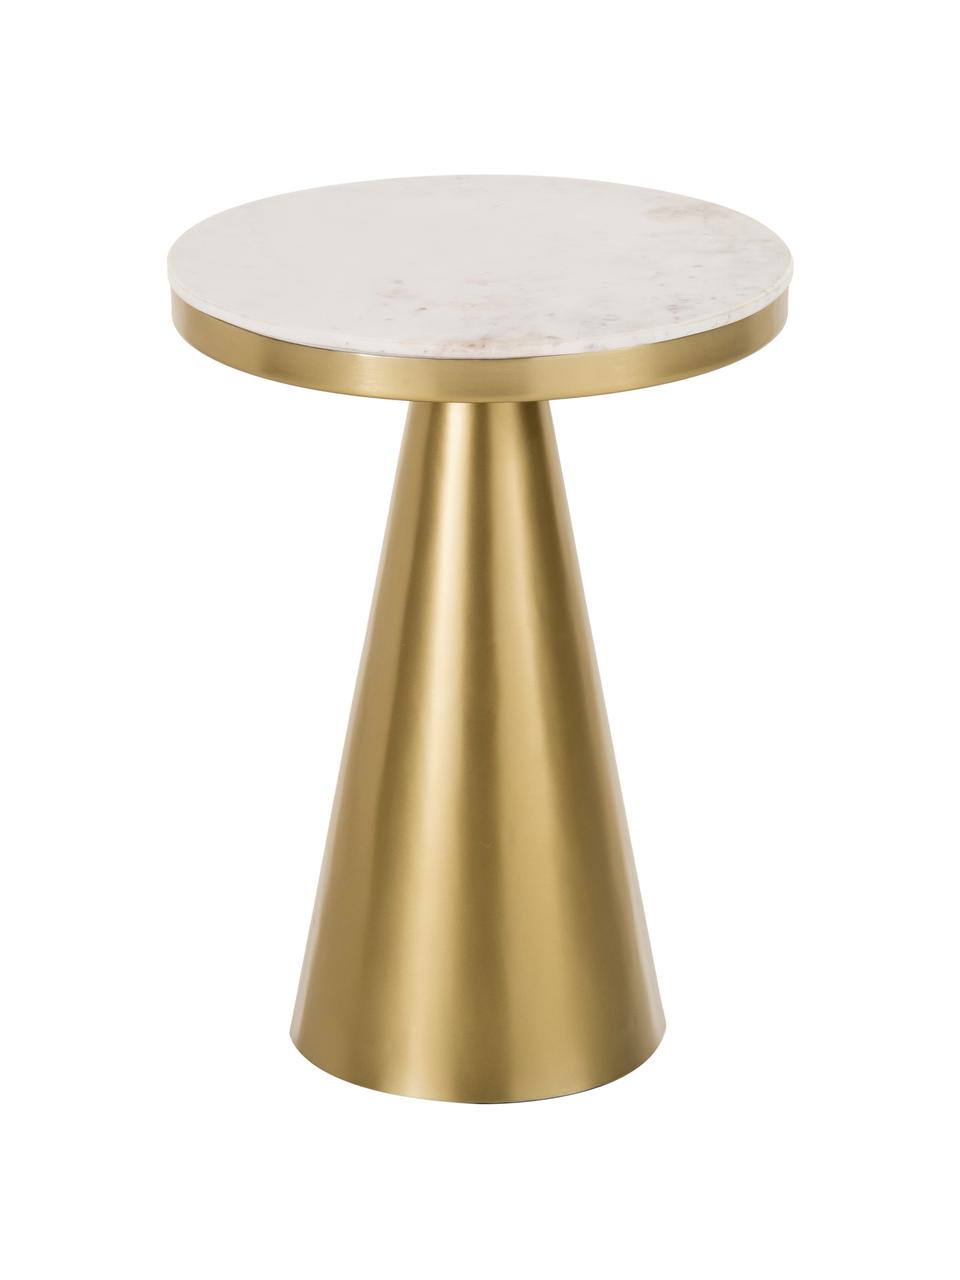 Okrągły stolik pomocniczy z marmuru Zelda, Blat: marmur, Stelaż: metal powlekany, Białoszary, odcienie złotego, Ø 41 x W 54 cm